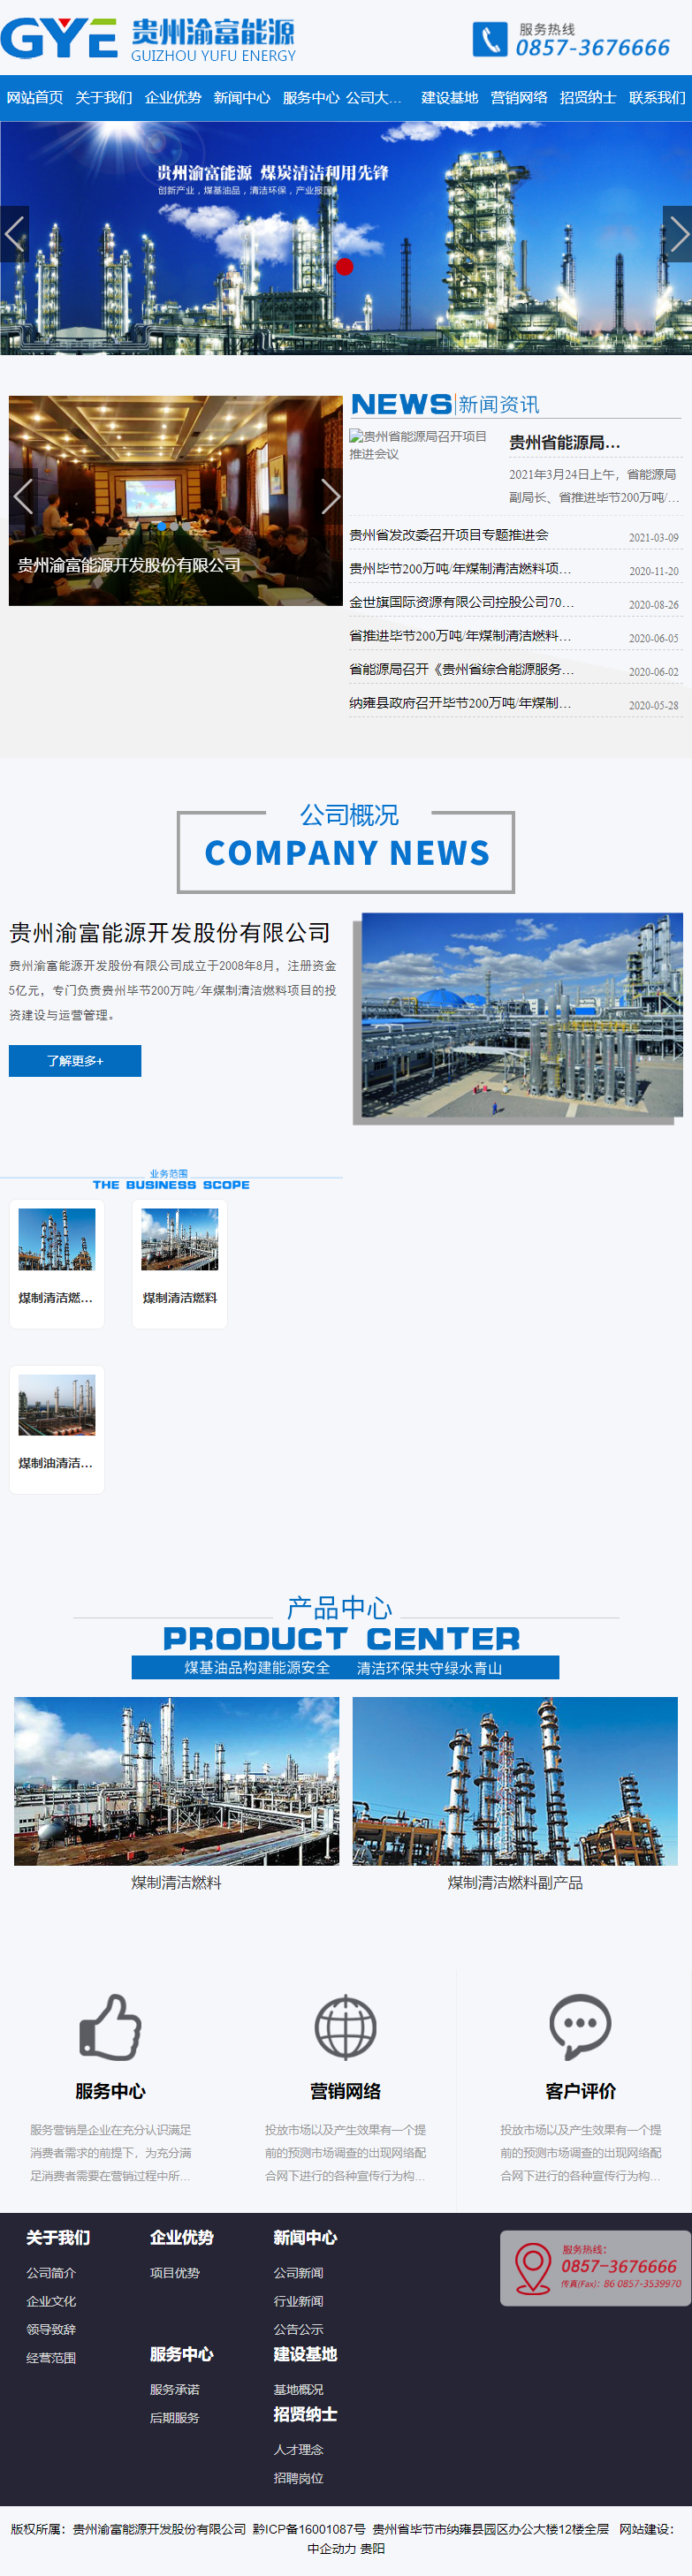 贵州渝富能源开发股份有限公司网站案例